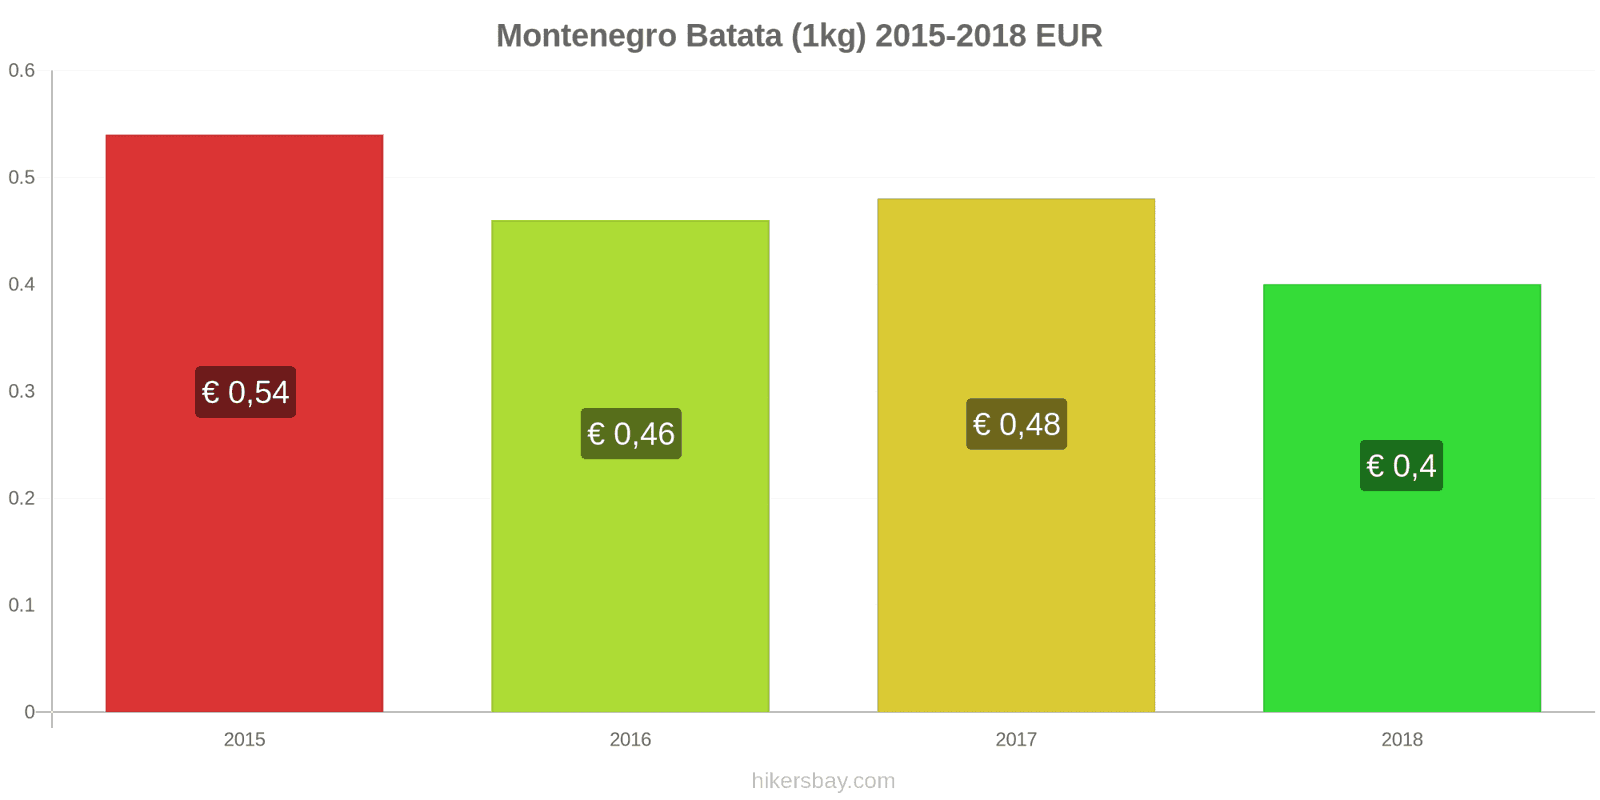 Montenegro mudanças de preços Batatas (1kg) hikersbay.com